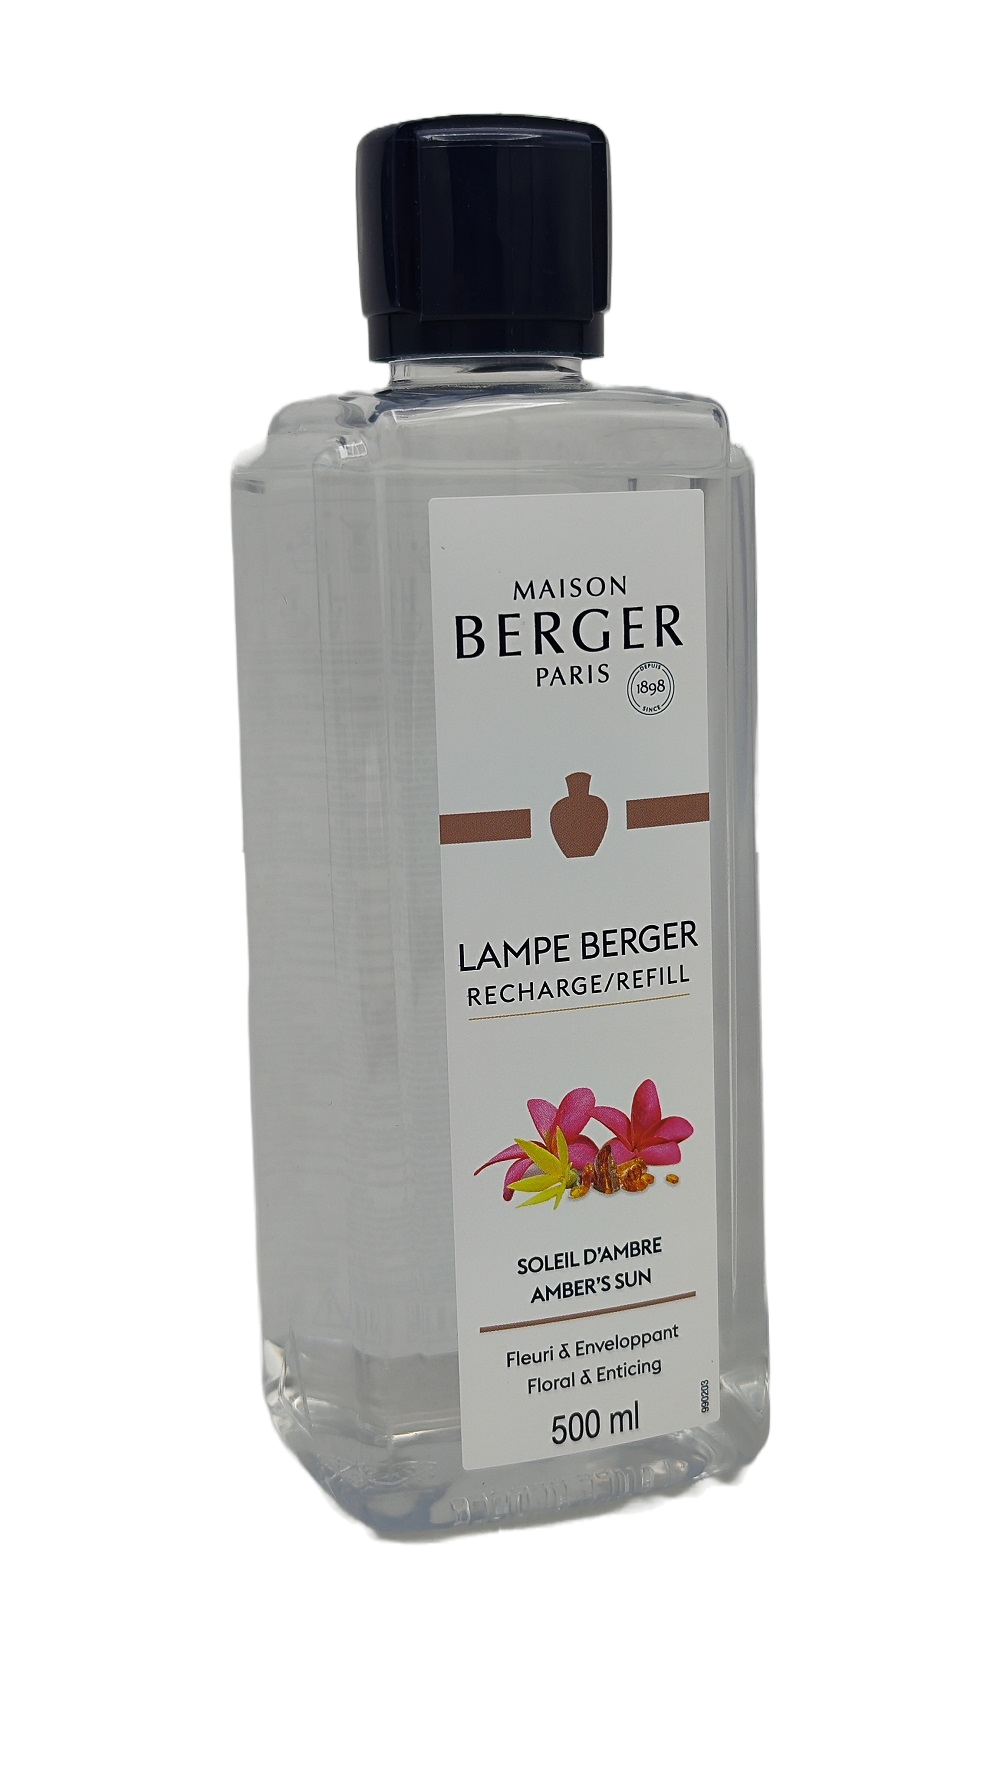 Amber's Sun - Lampe Berger Refill 500 ml - Maison Berger